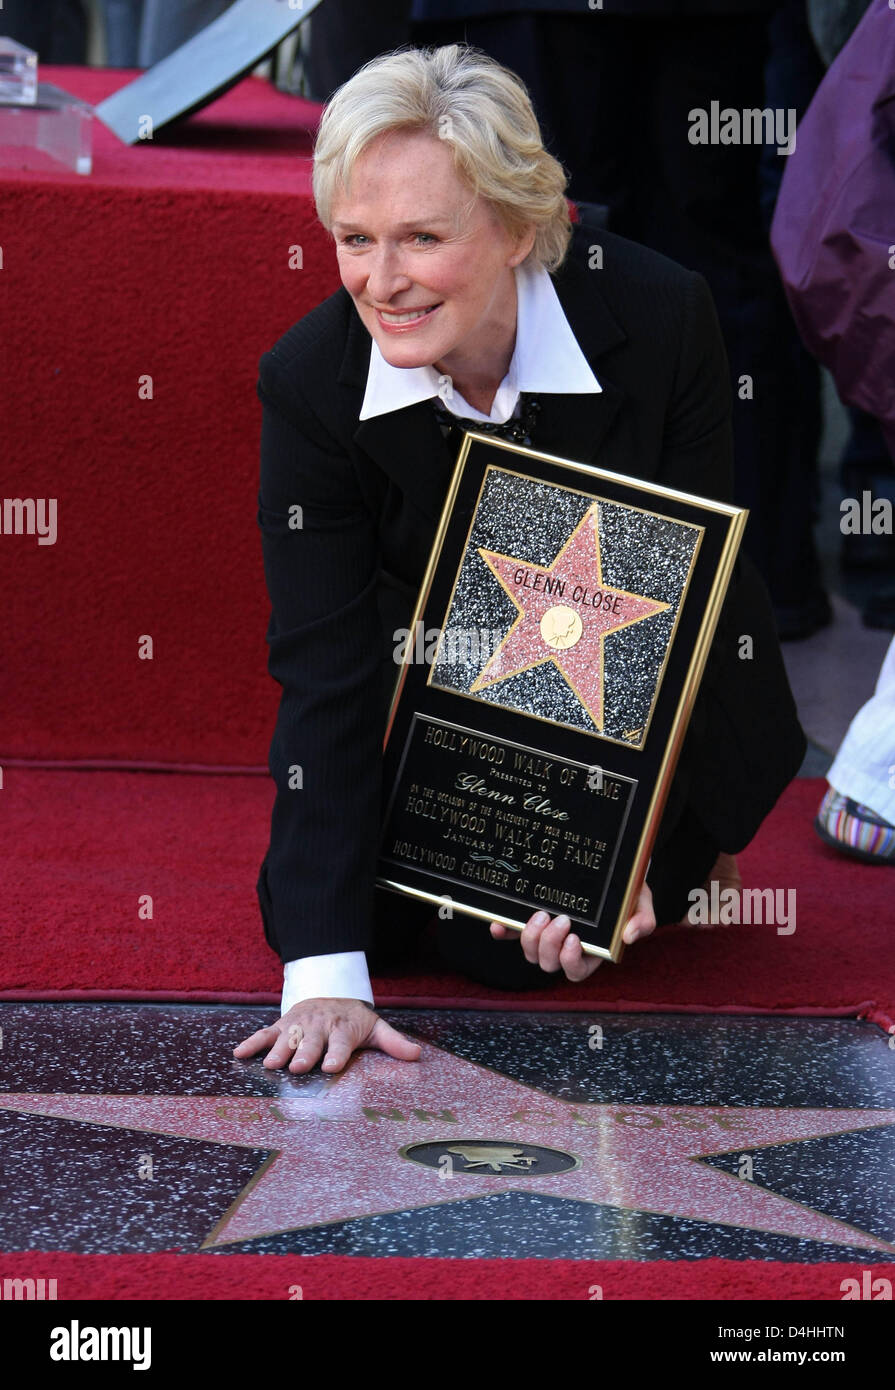 Schauspielerin Glenn Close feiert ihre neu erhaltene Stern auf dem Hollywood Walk of Fame in Los Angeles, USA, 12. Januar 2009. Foto: Hubert Boesl Stockfoto